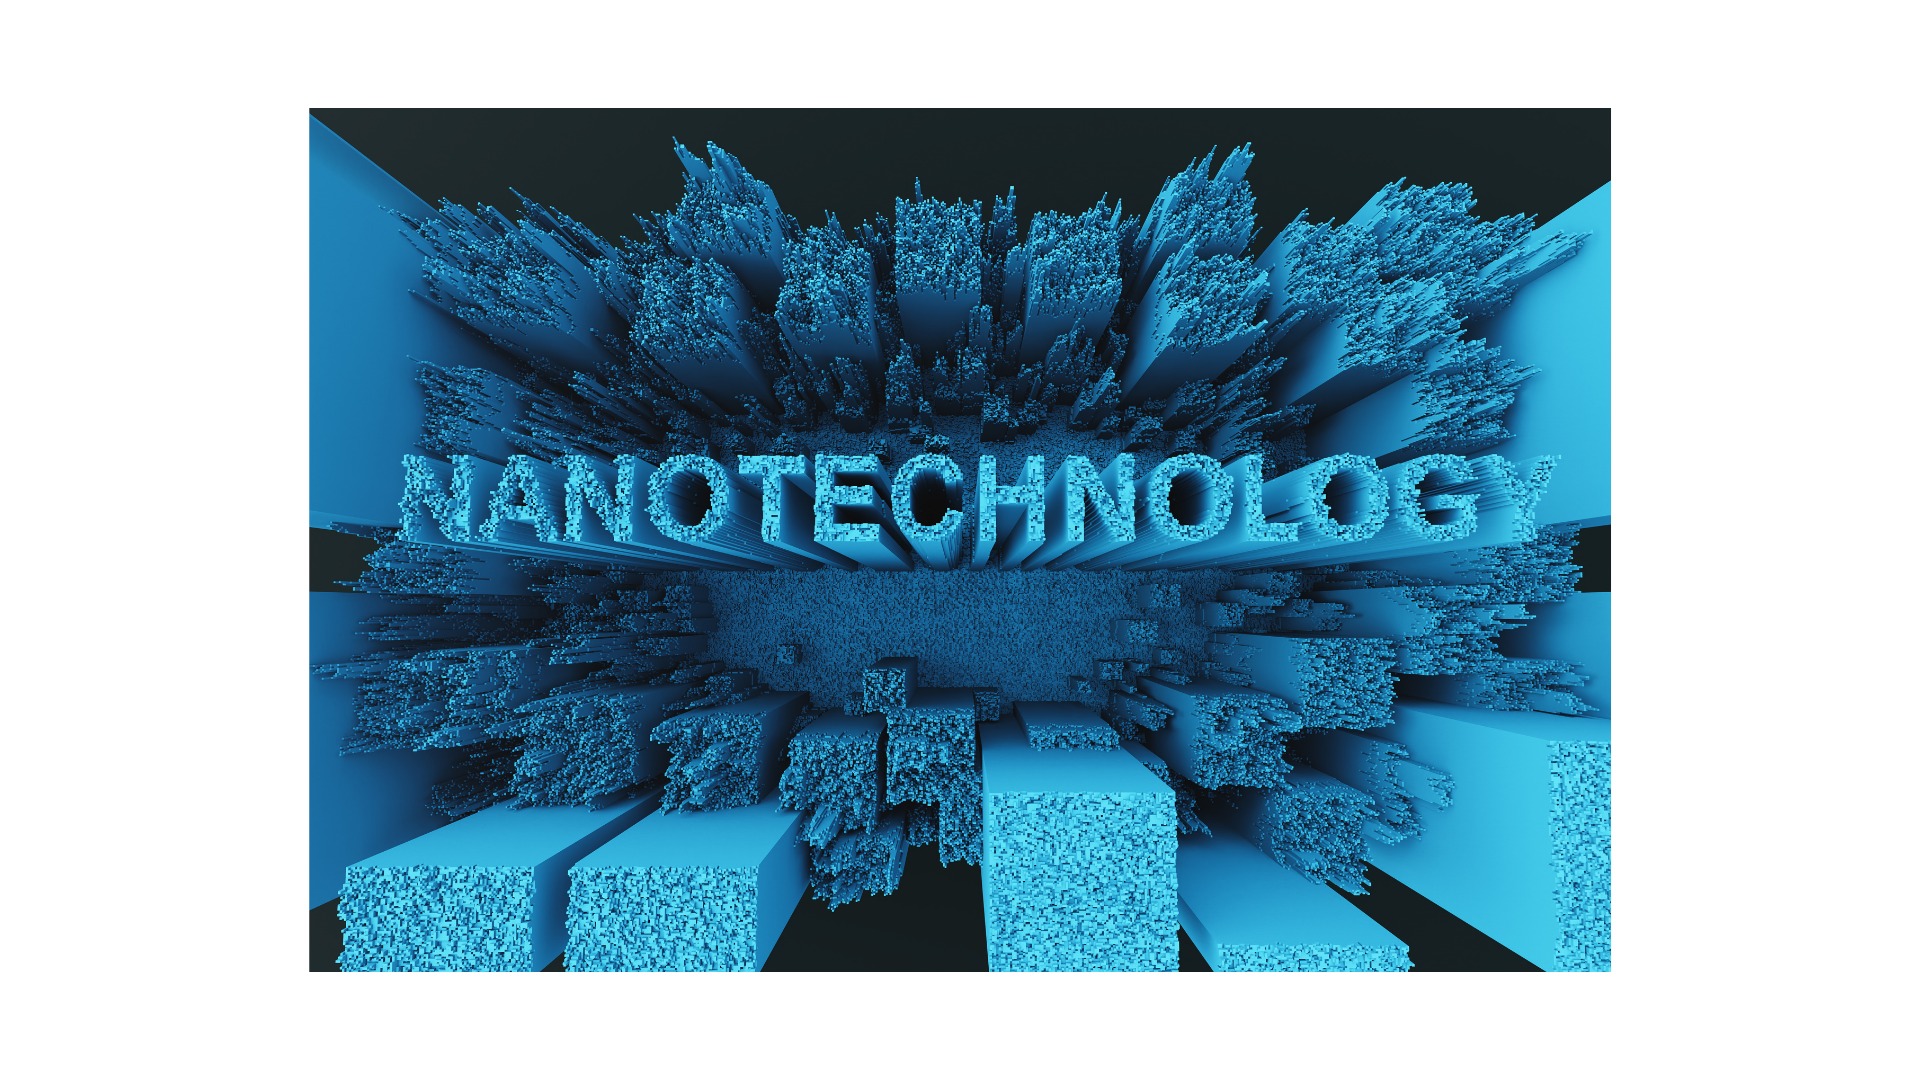 ナノテクノロジー,Nanotechnology